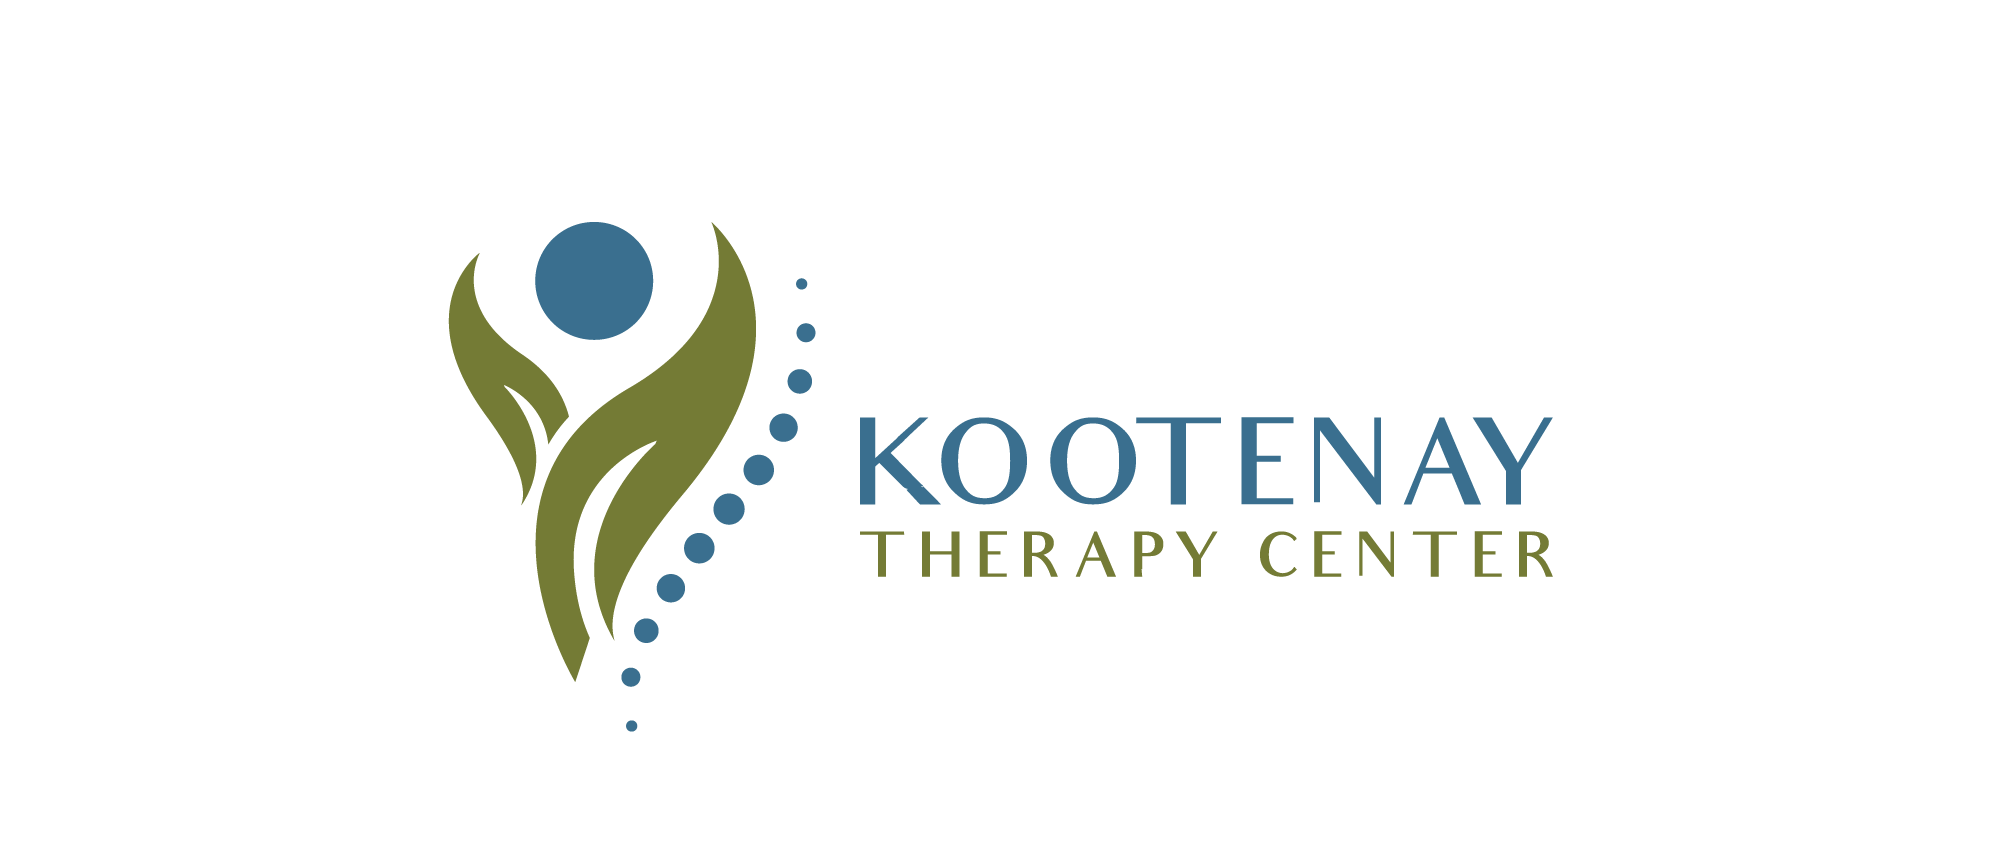 Kootenay Therapy Center